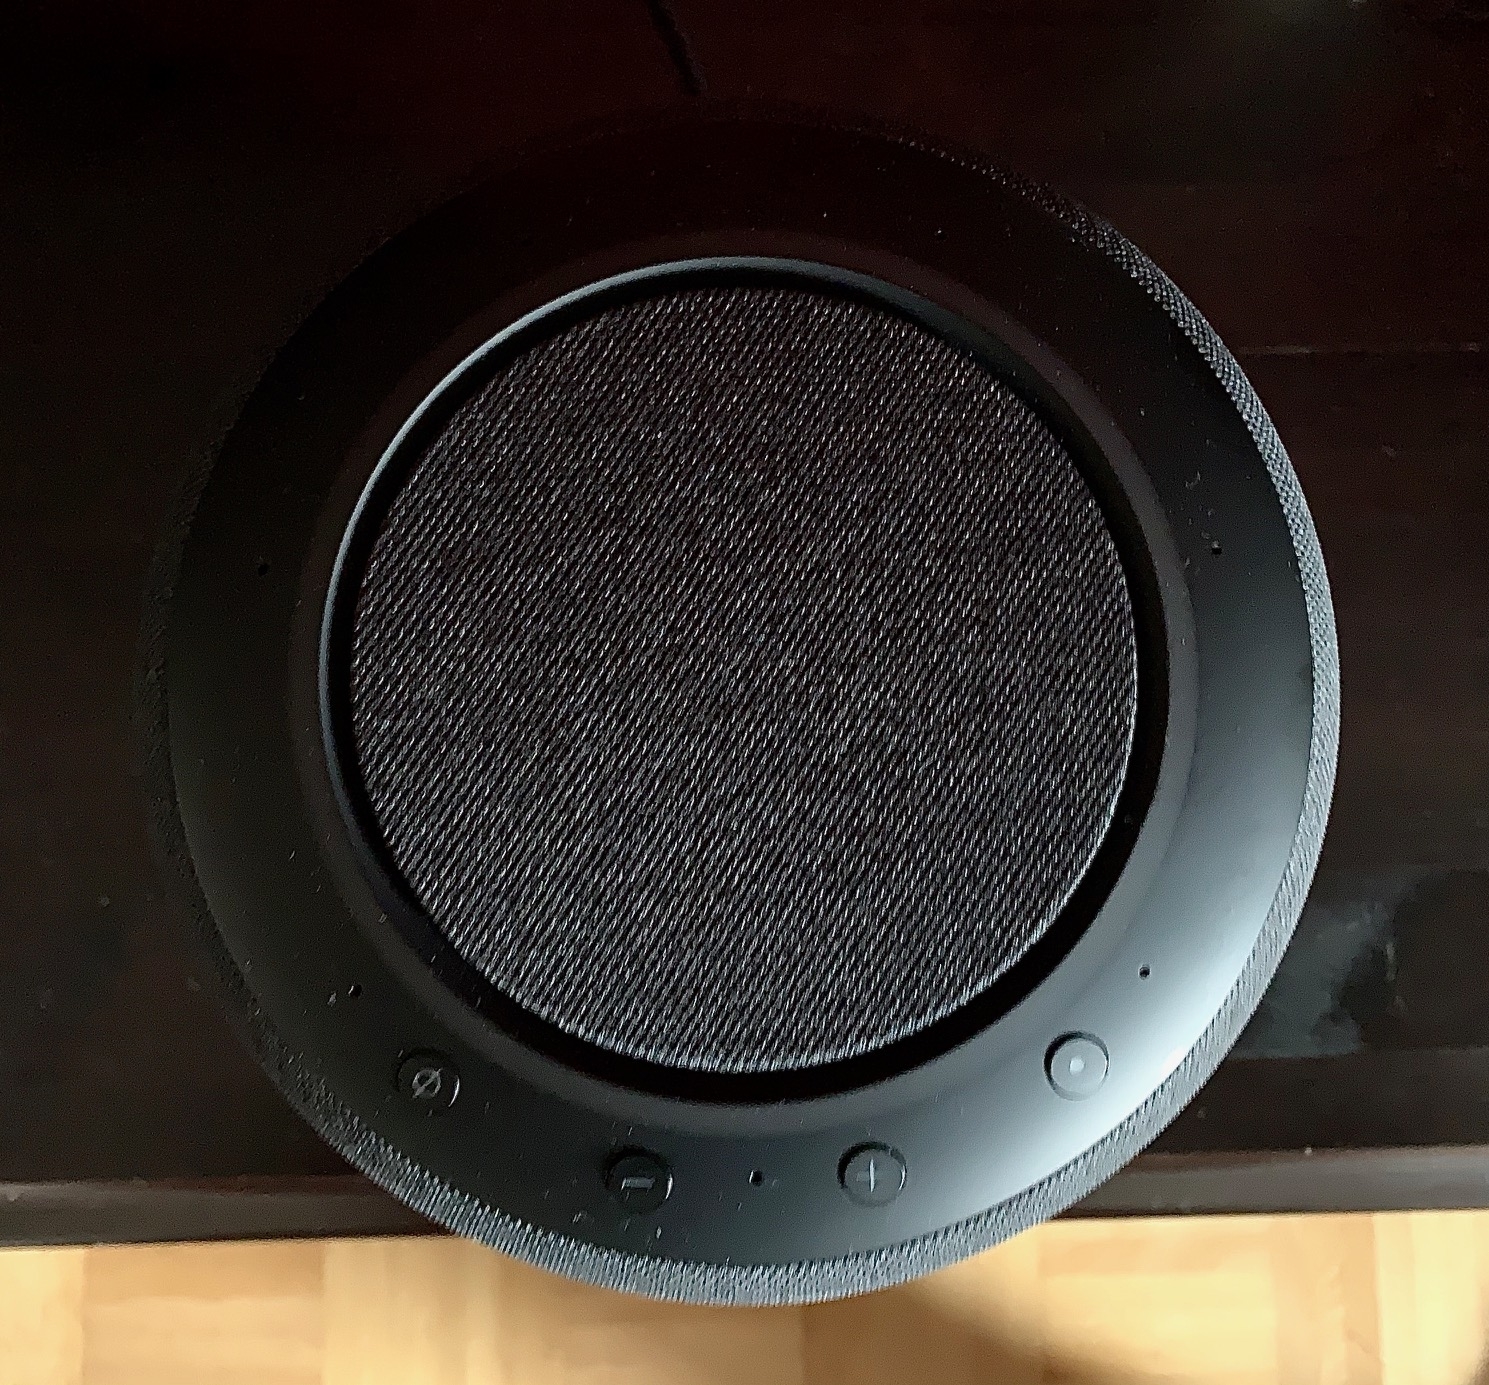 Angehört: Smart Speaker Echo Studio mit 3D-Sound | c't Magazin